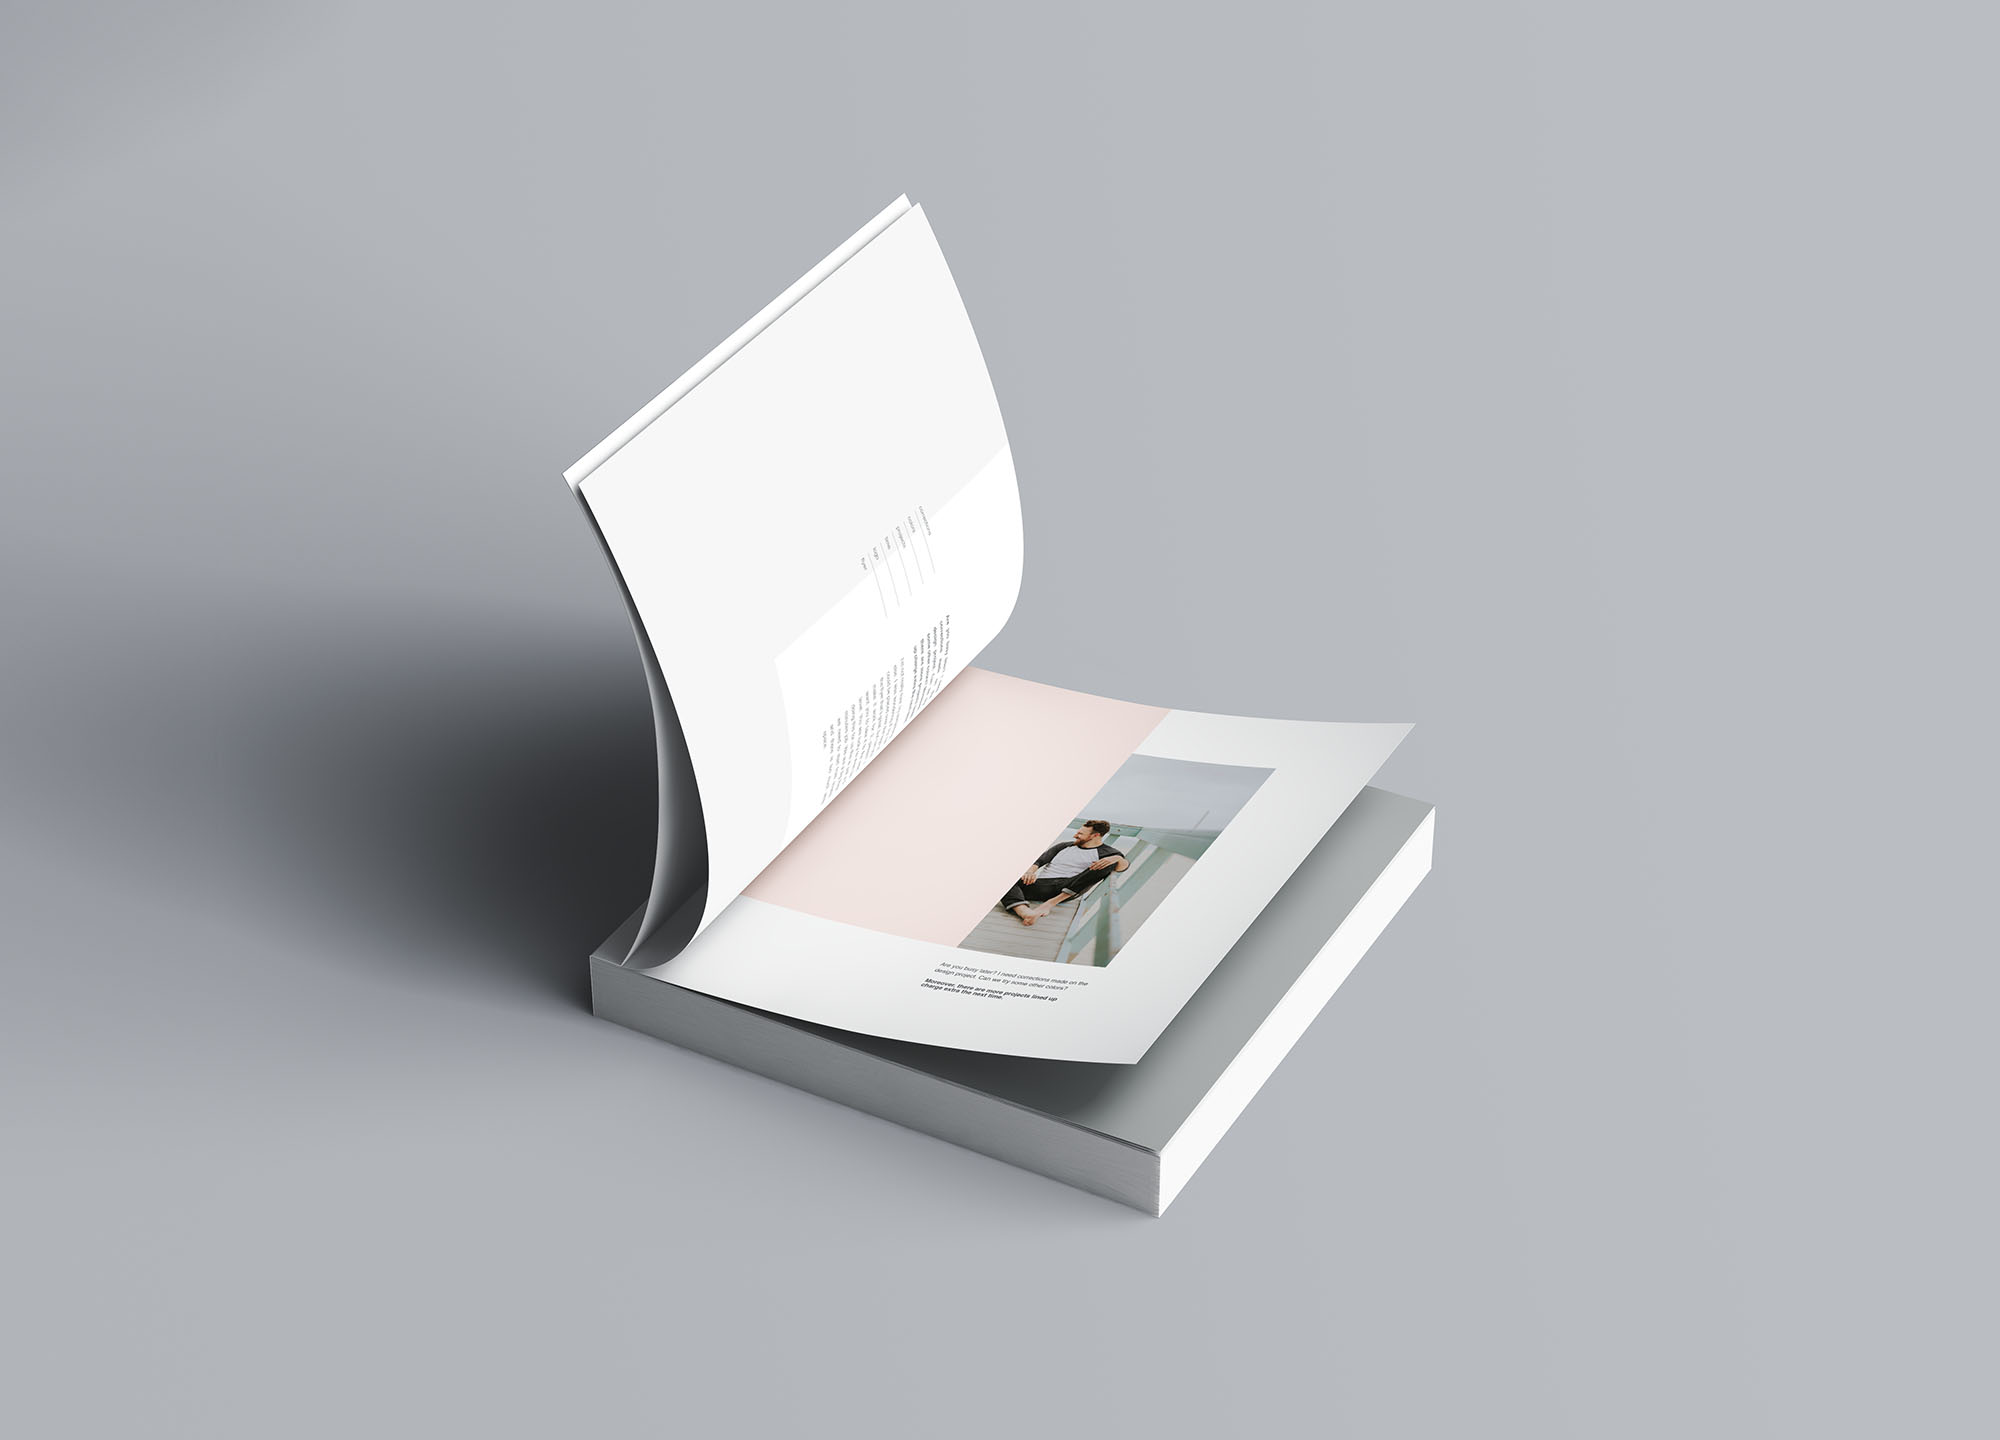 方形软封图书内页版式设计效果图样机素材库精选 Square Softcover Book Mockup插图(5)